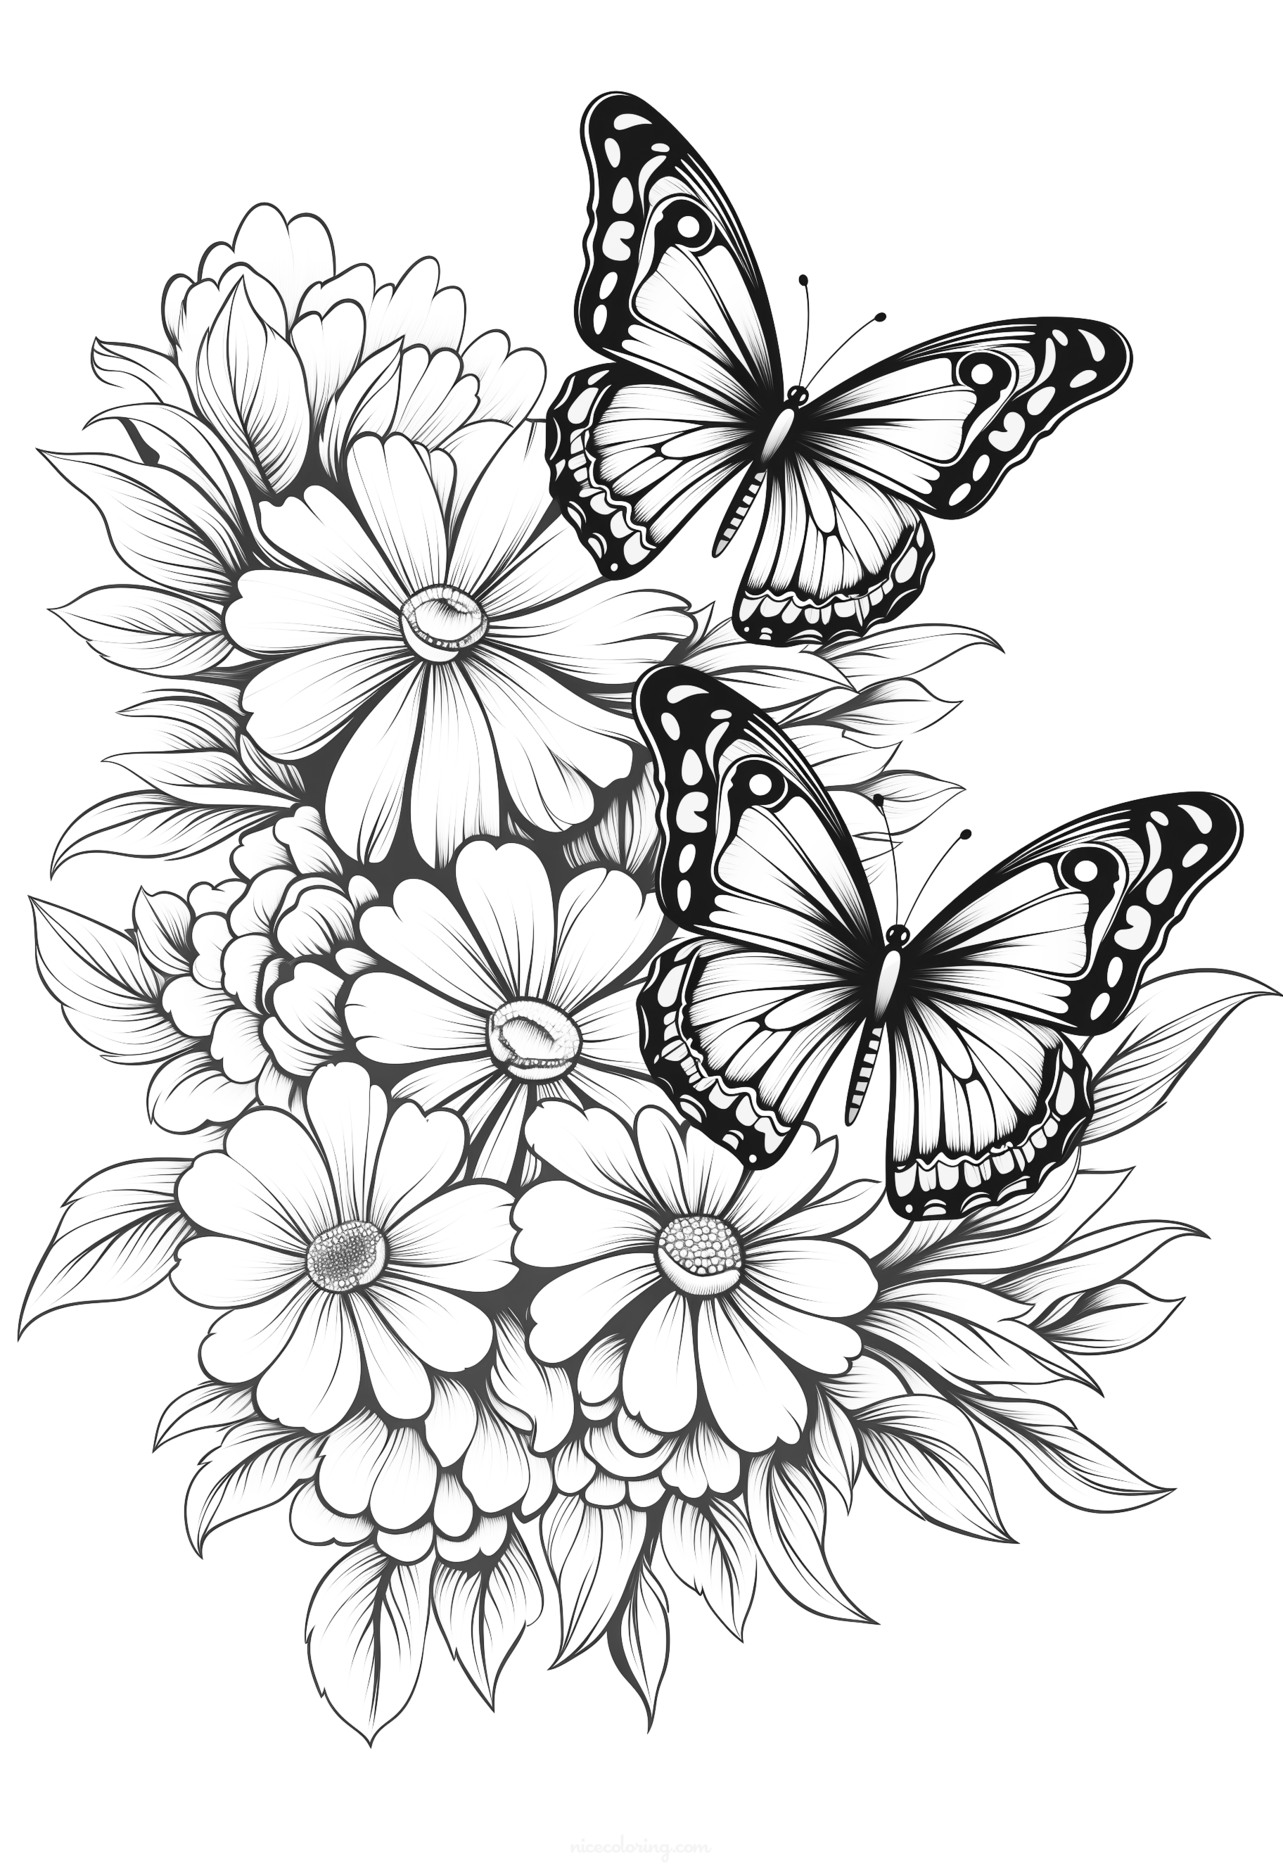 Una pagina da colorare di farfalla affascinante con disegni intricati